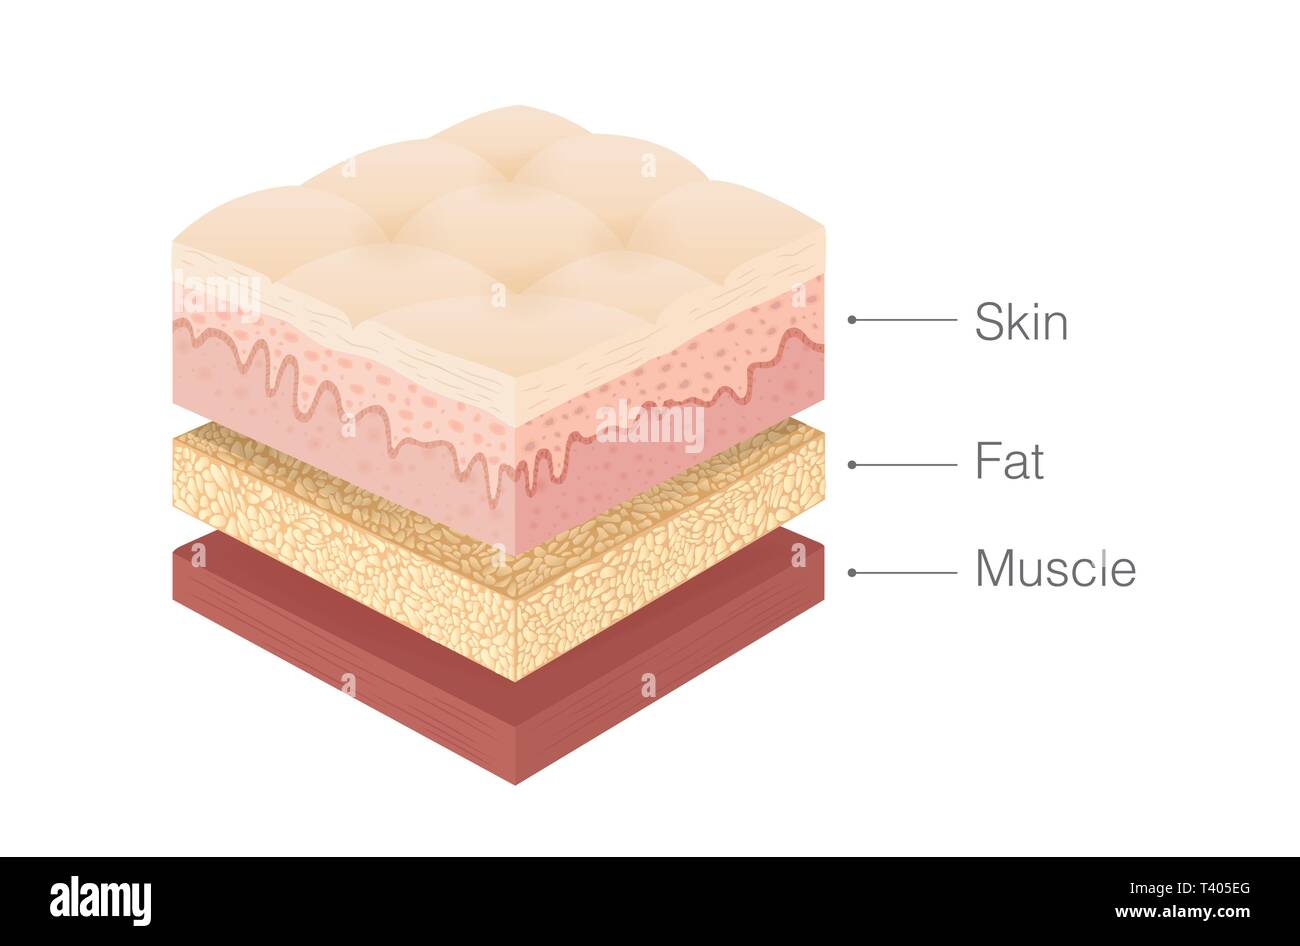 Anatomie der menschlichen Haut, Fett und Muskel Layer in isometrischer Stil. Stock Vektor